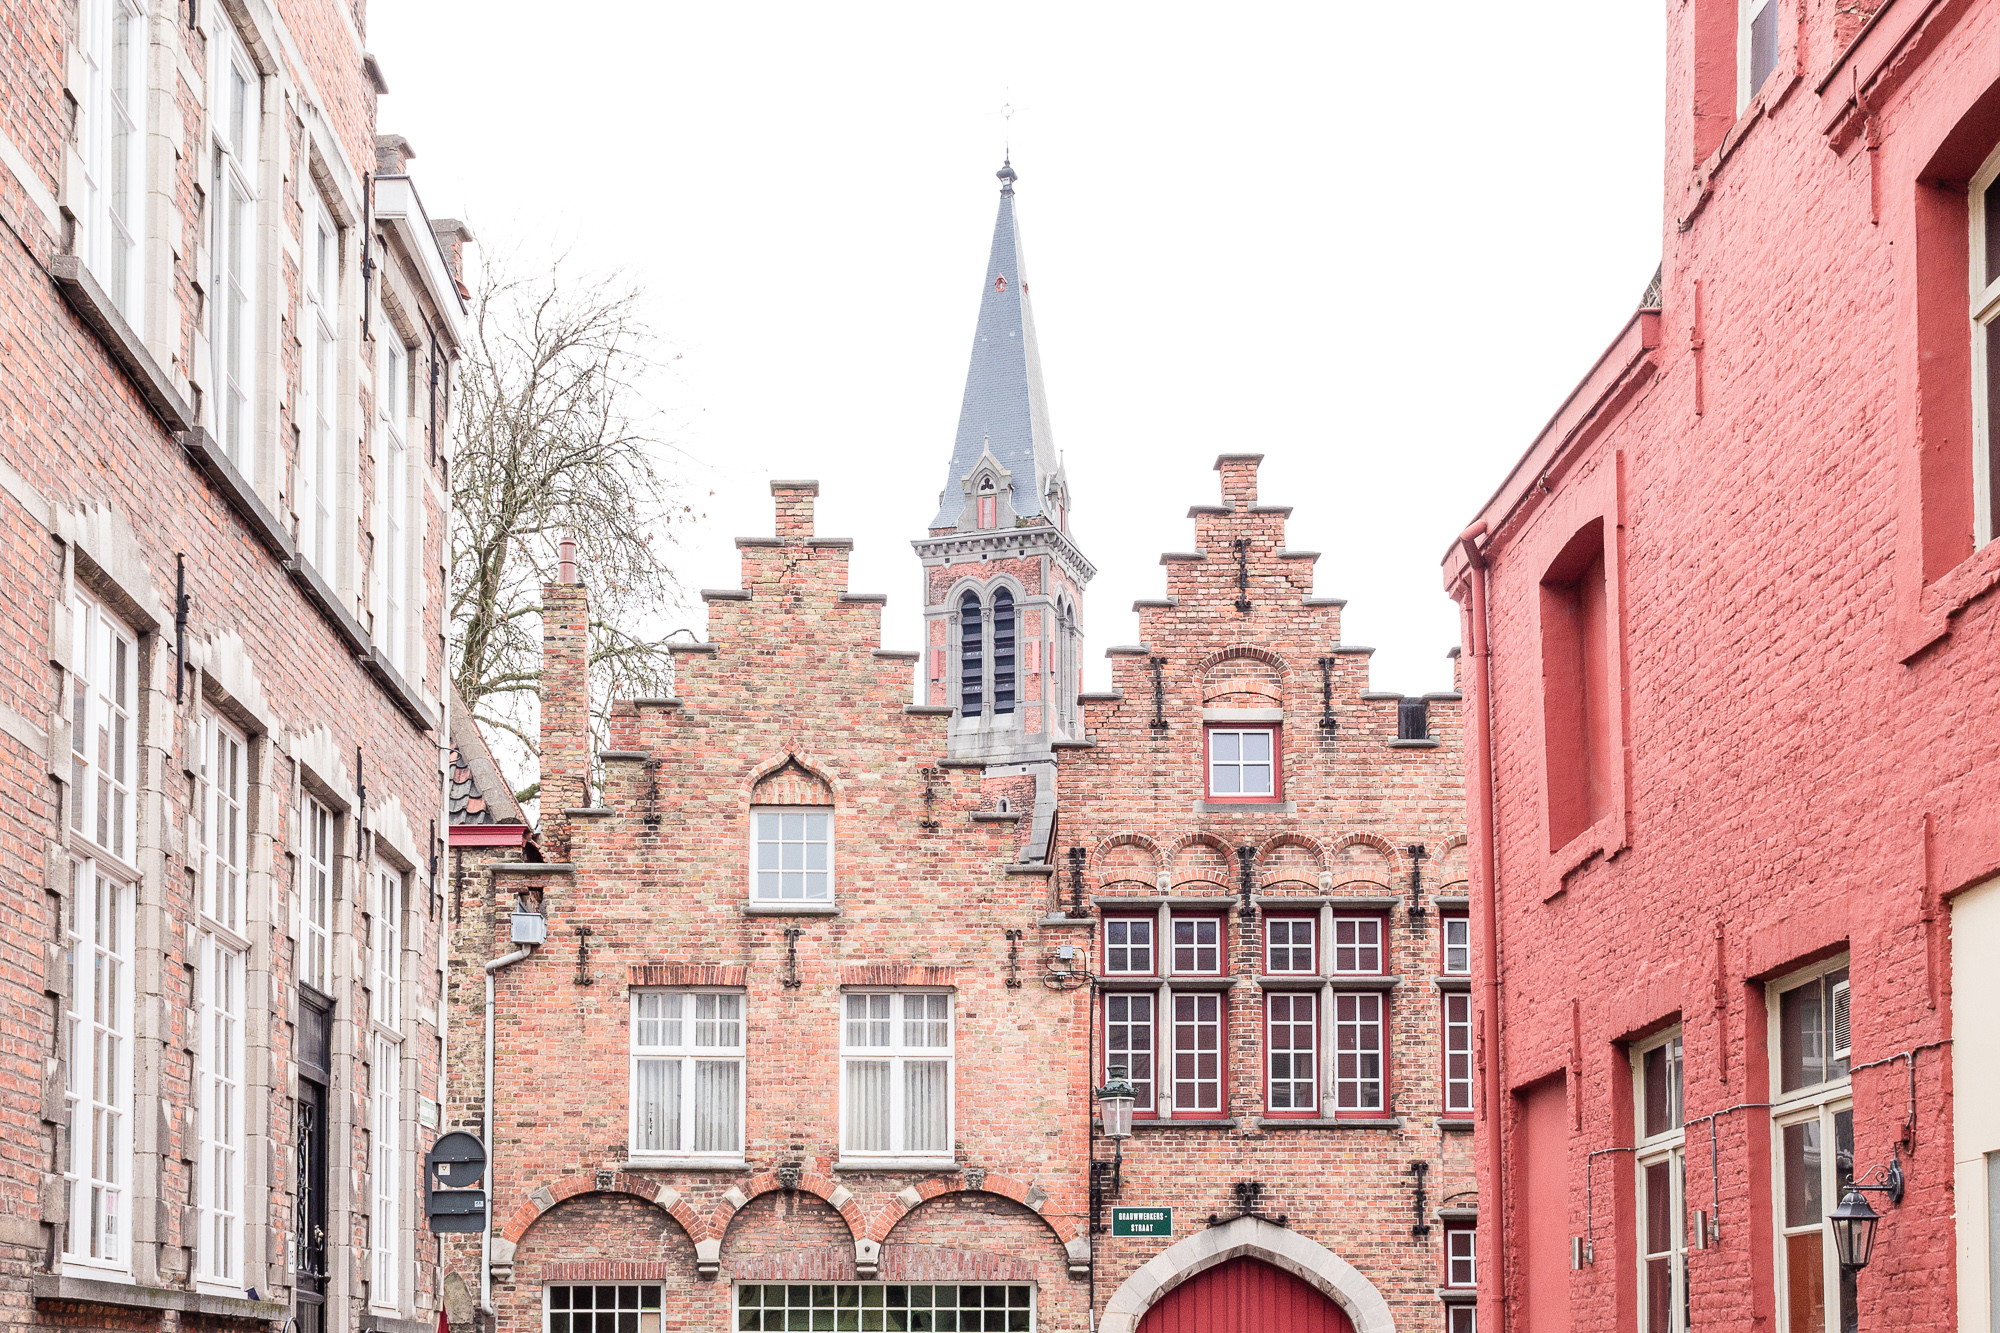 Pignon à gradins ou redents et façades roses façon Disneyland, Bruges, Belgique